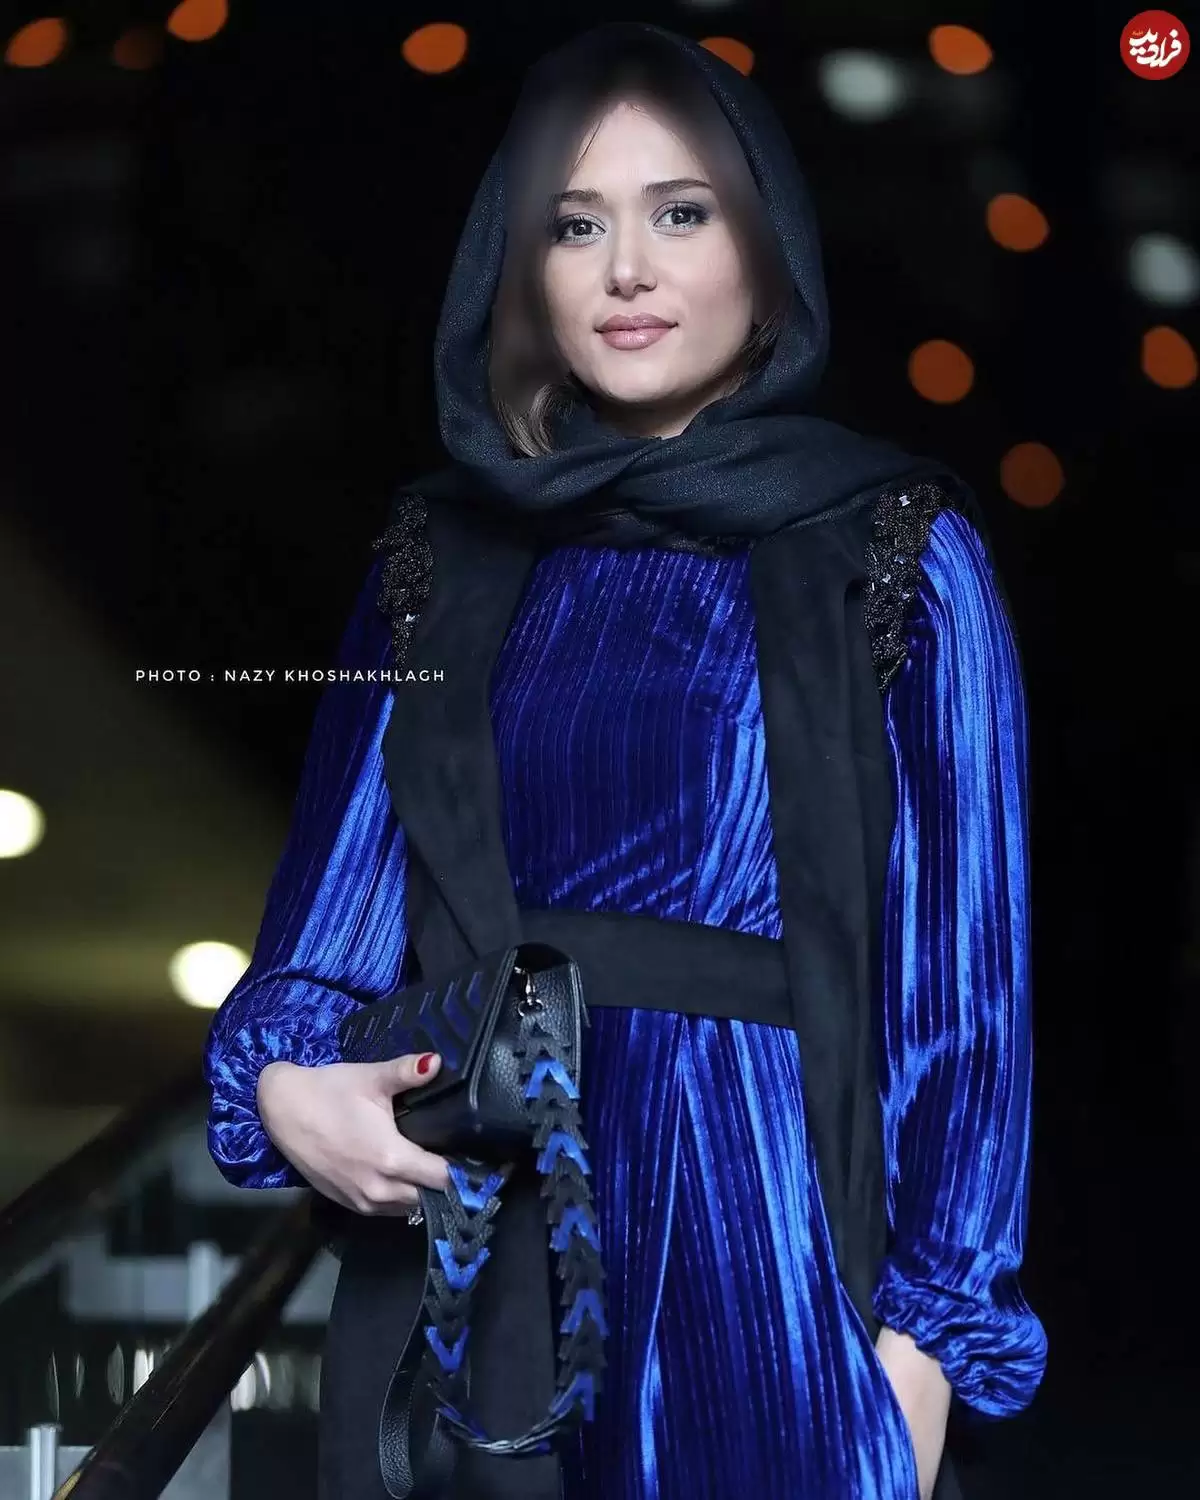 تغییر چهره شیرین سریال شهرزاد بعد 9 سال  -  زیبایی شرقی پریناز ایزدیار اینستاگرام را ترکاند!